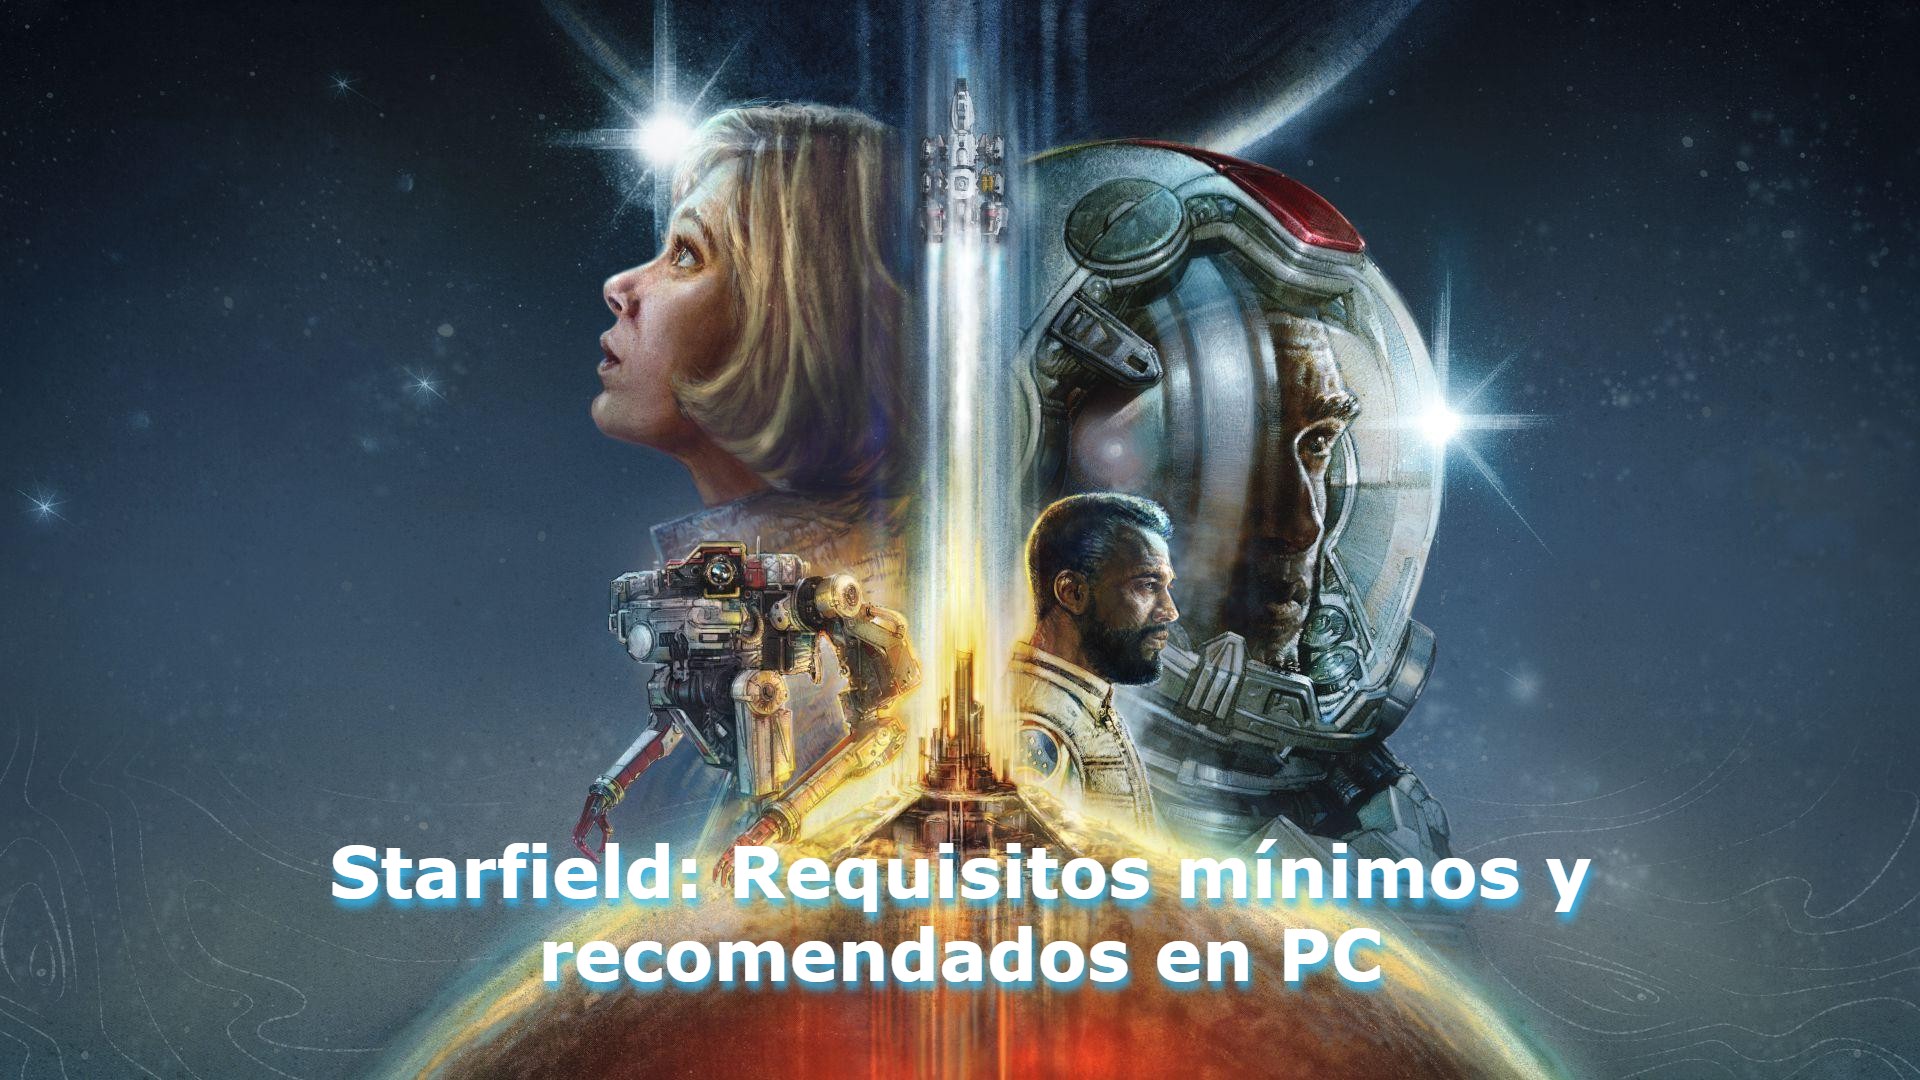 Starfield, Requisitos mínimos y recomendados en PC